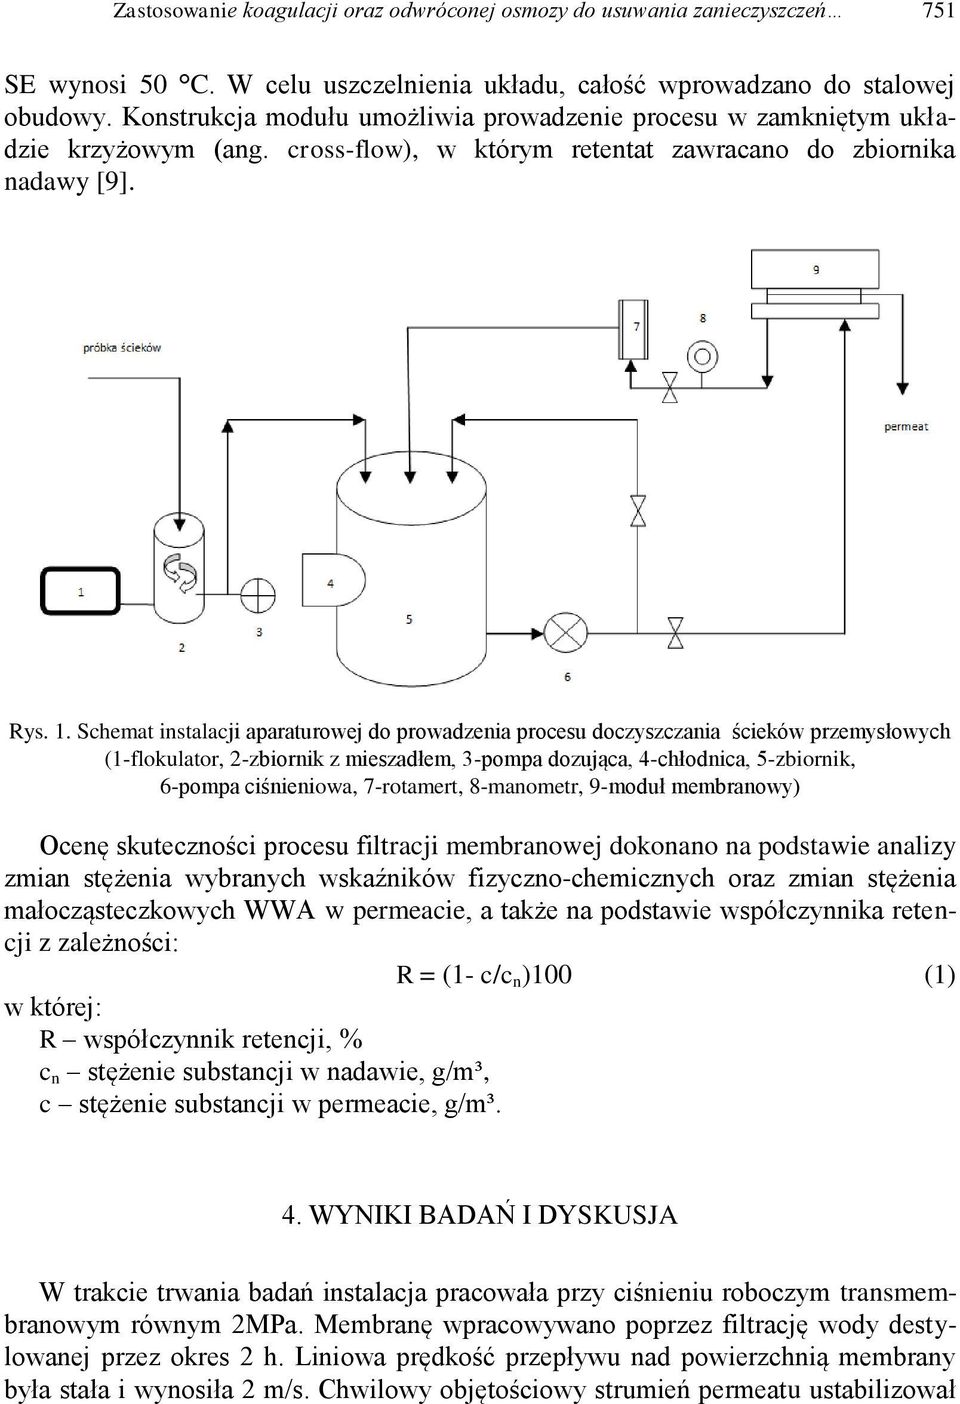 Schemat instalacji aparaturowej do prowadzenia procesu doczyszczania ścieków przemysłowych (1-flokulator, 2-zbiornik z mieszadłem, 3-pompa dozująca, 4-chłodnica, 5-zbiornik, 6-pompa ciśnieniowa,